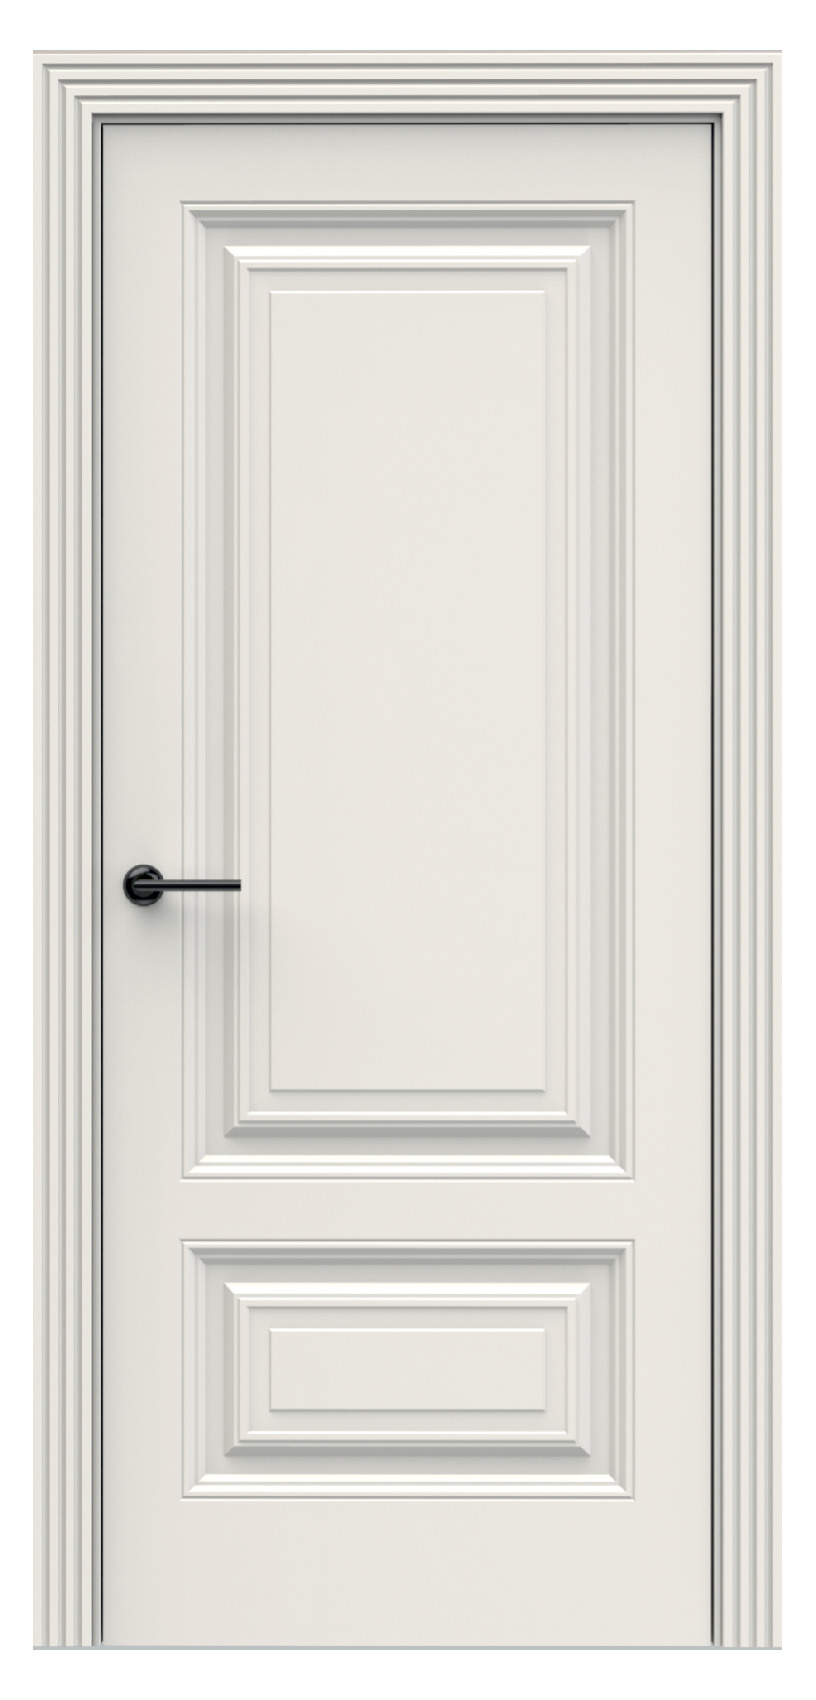 Questdoors Межкомнатная дверь QBR3, арт. 17916 - фото №1